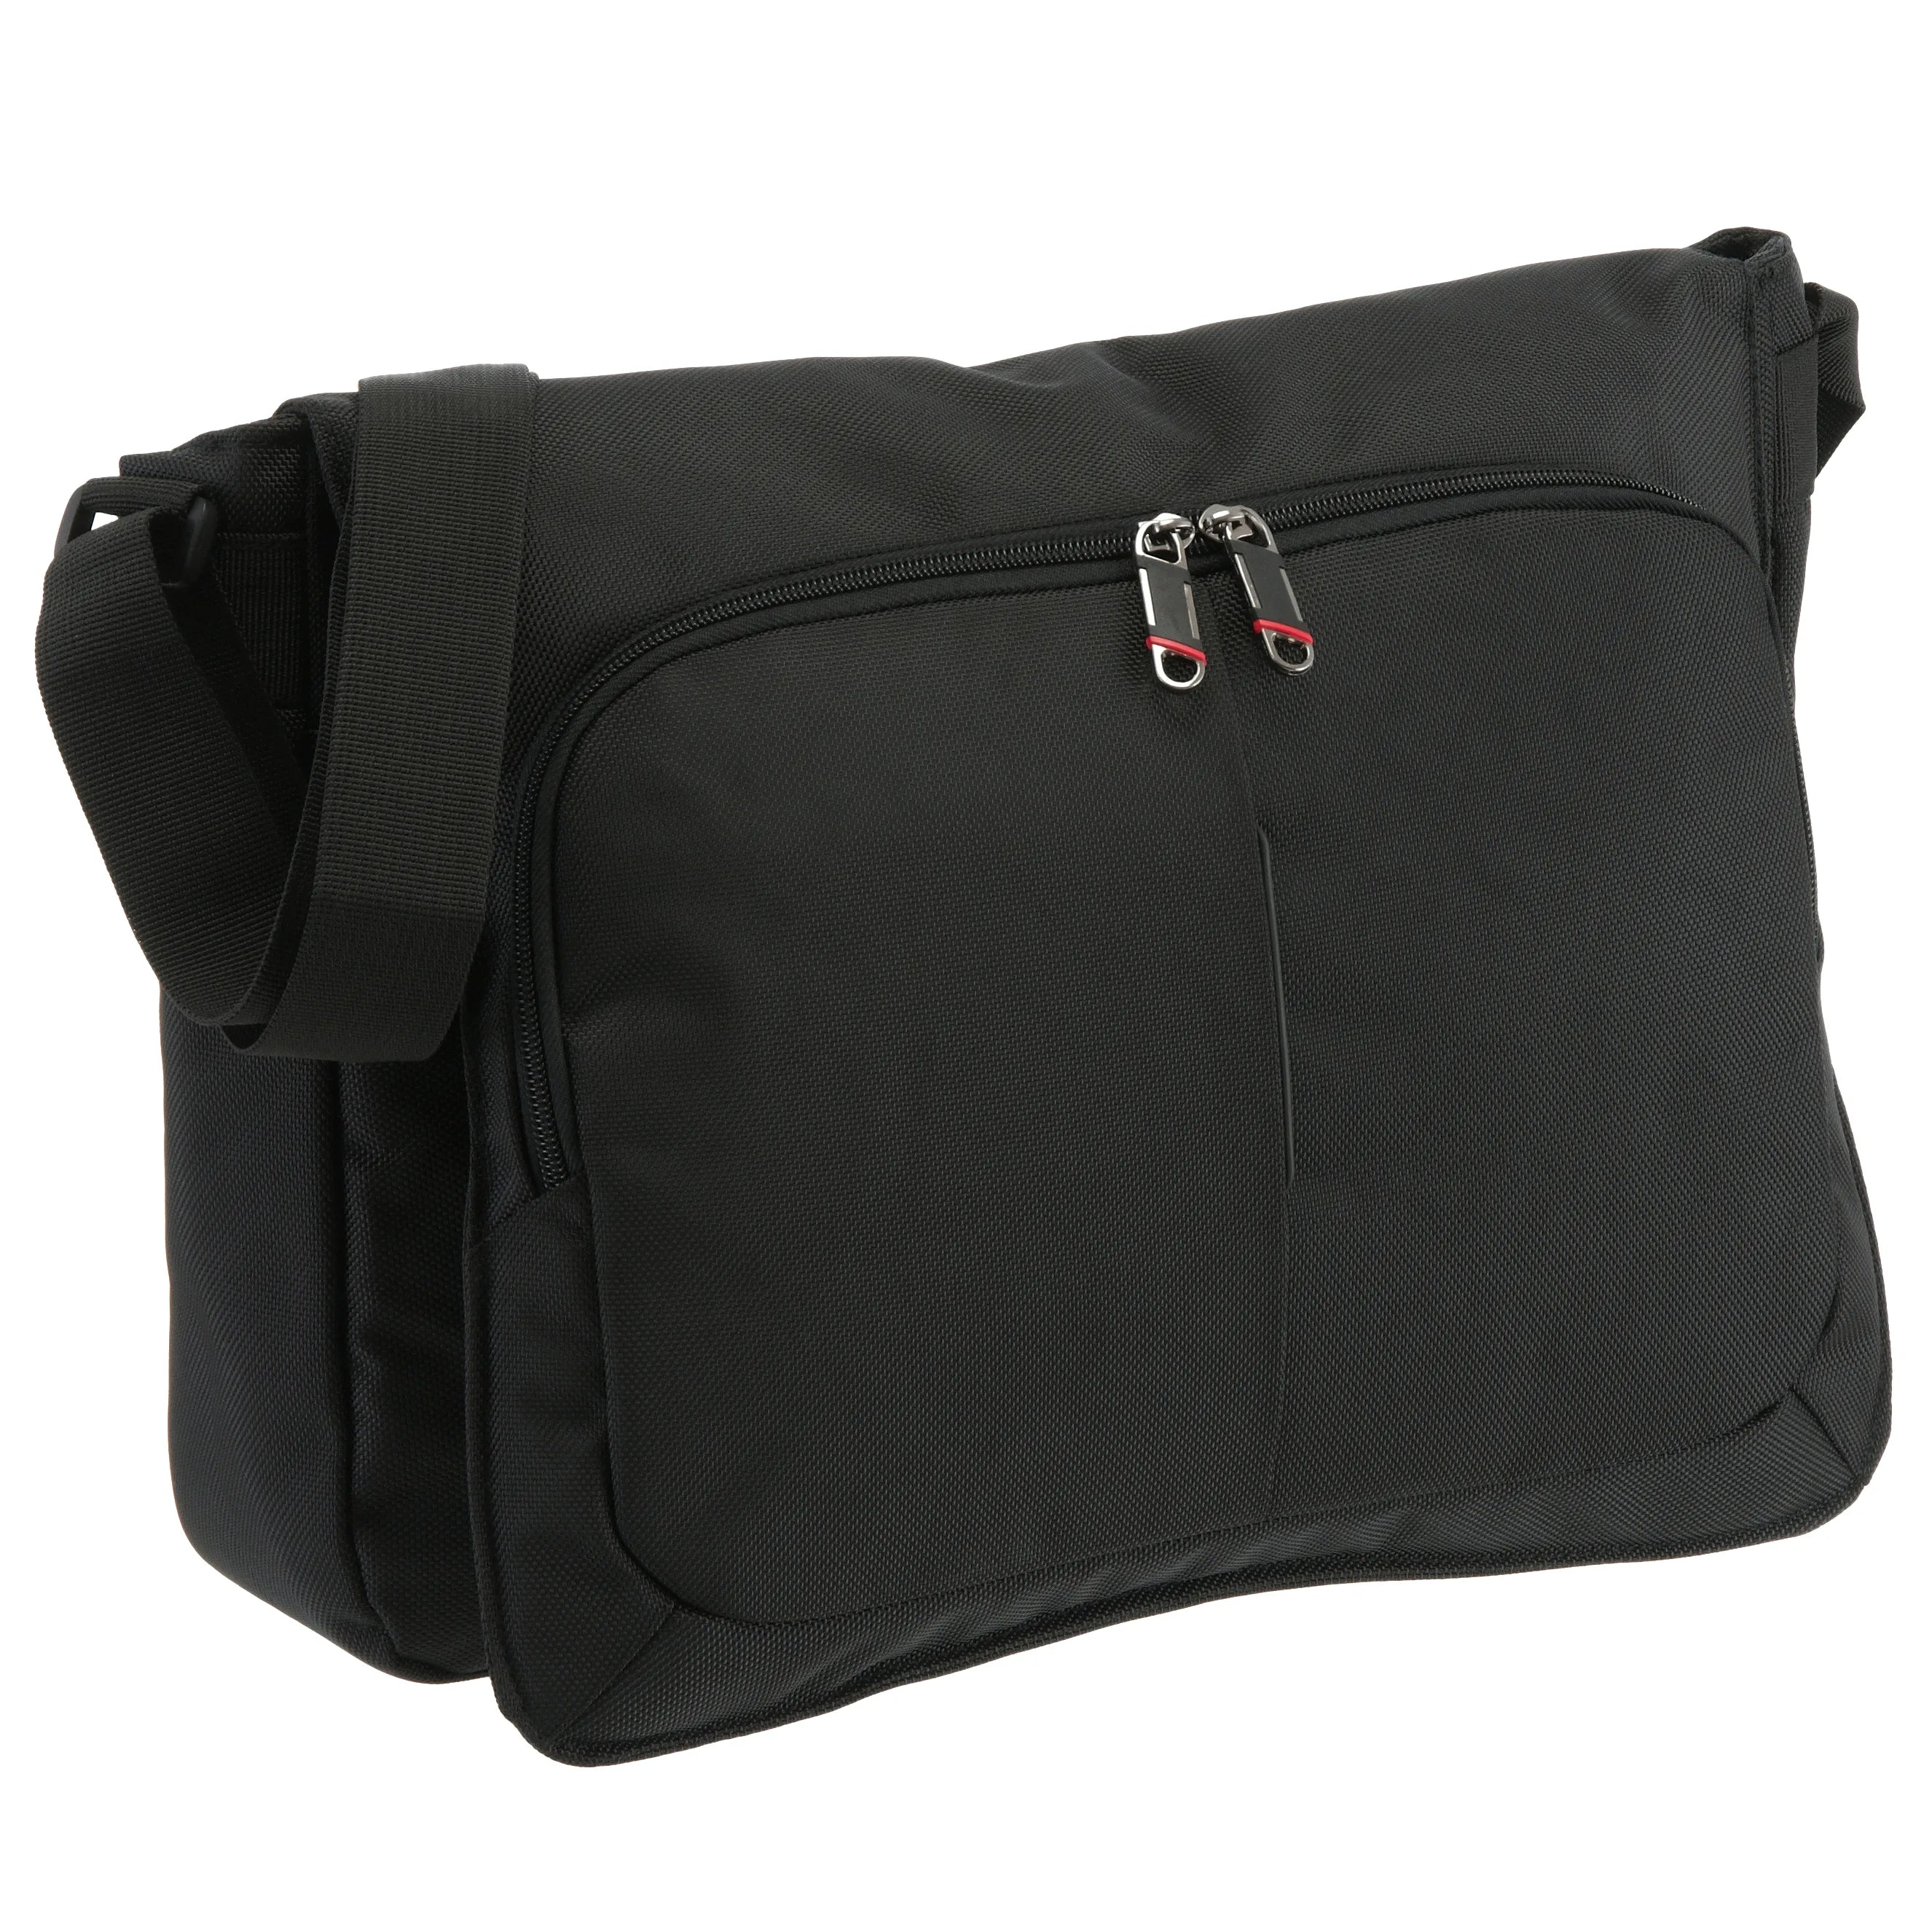 Leonhard Heyden Soho Basic shoulder bag with laptop compartment 38 cm - black